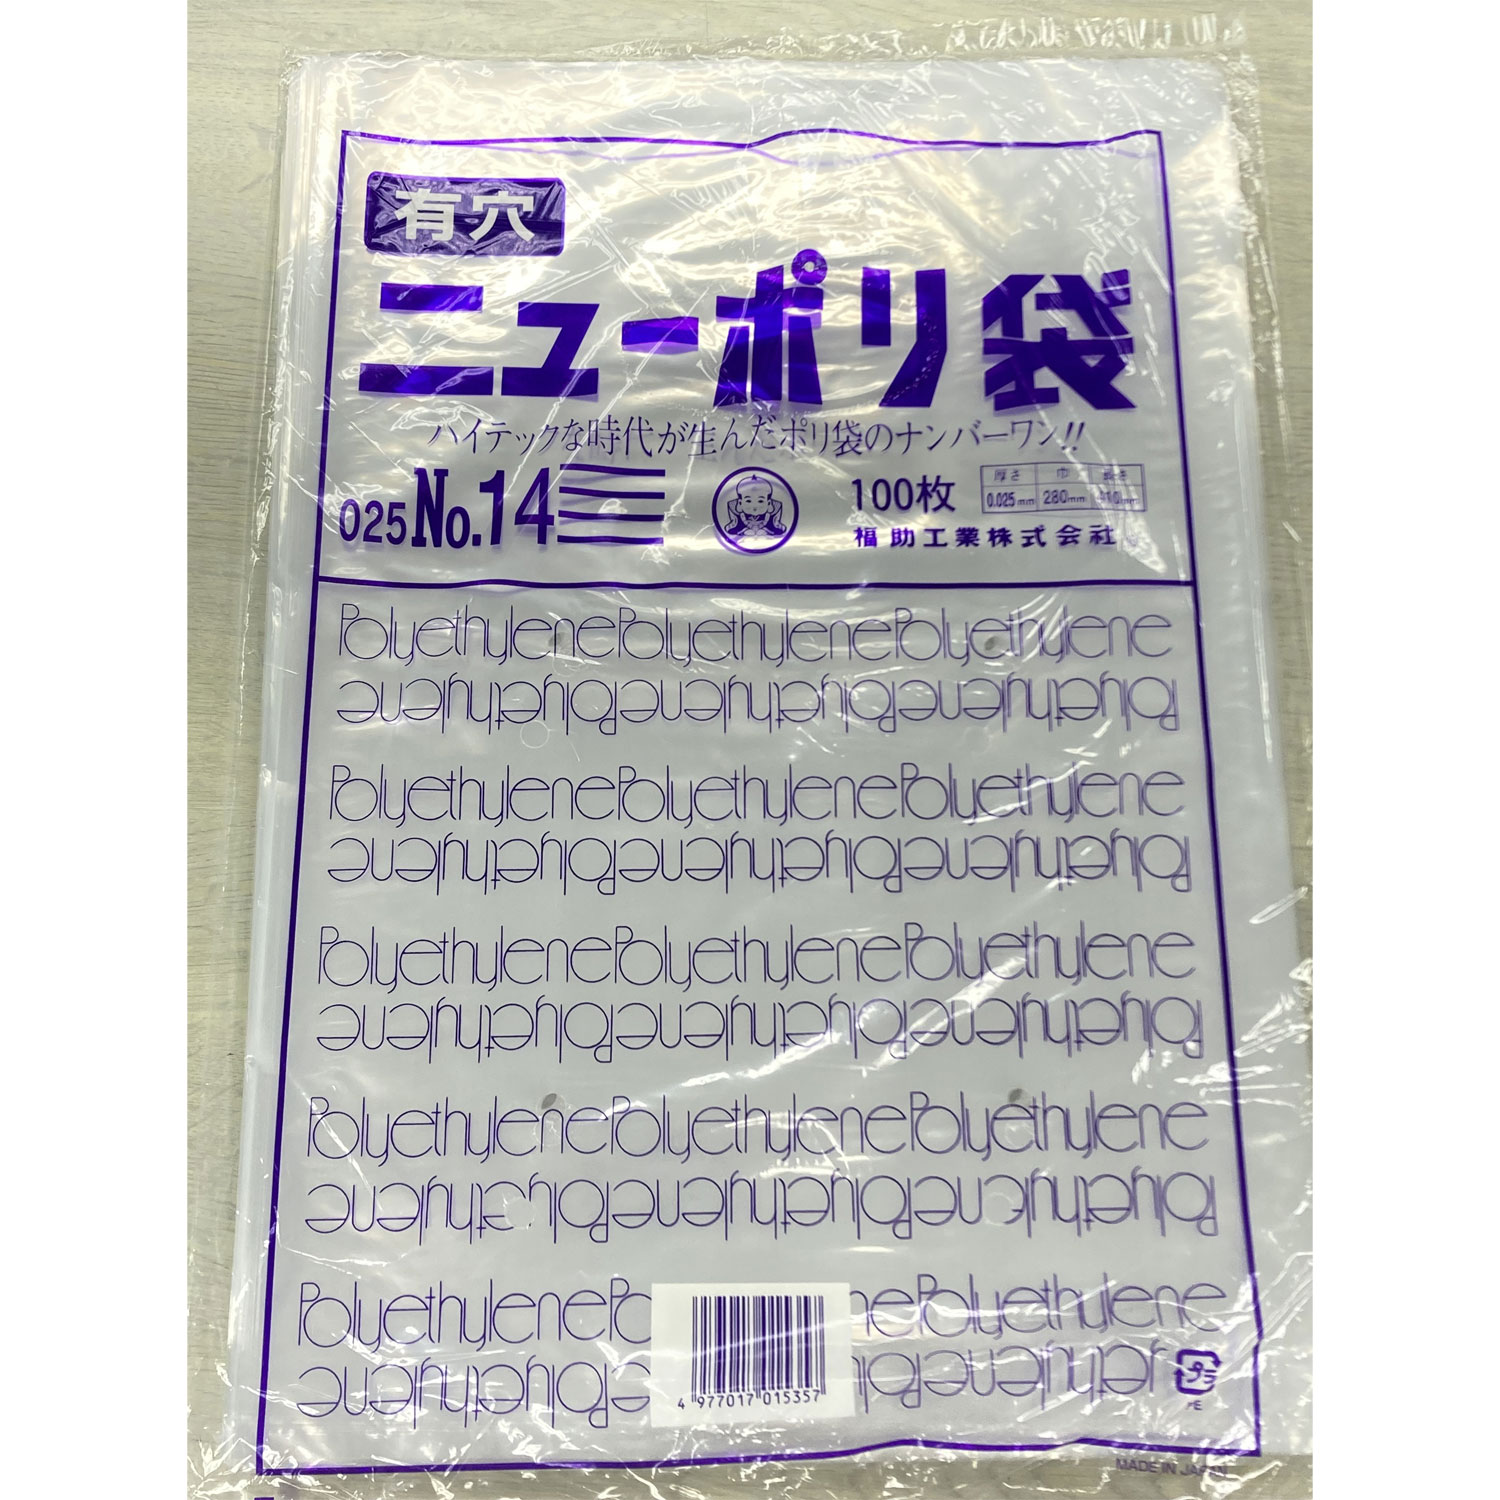 【2000枚】ニューポリ袋 025 No.14 (4穴) 福助工業 ポリ袋 袋 00679429